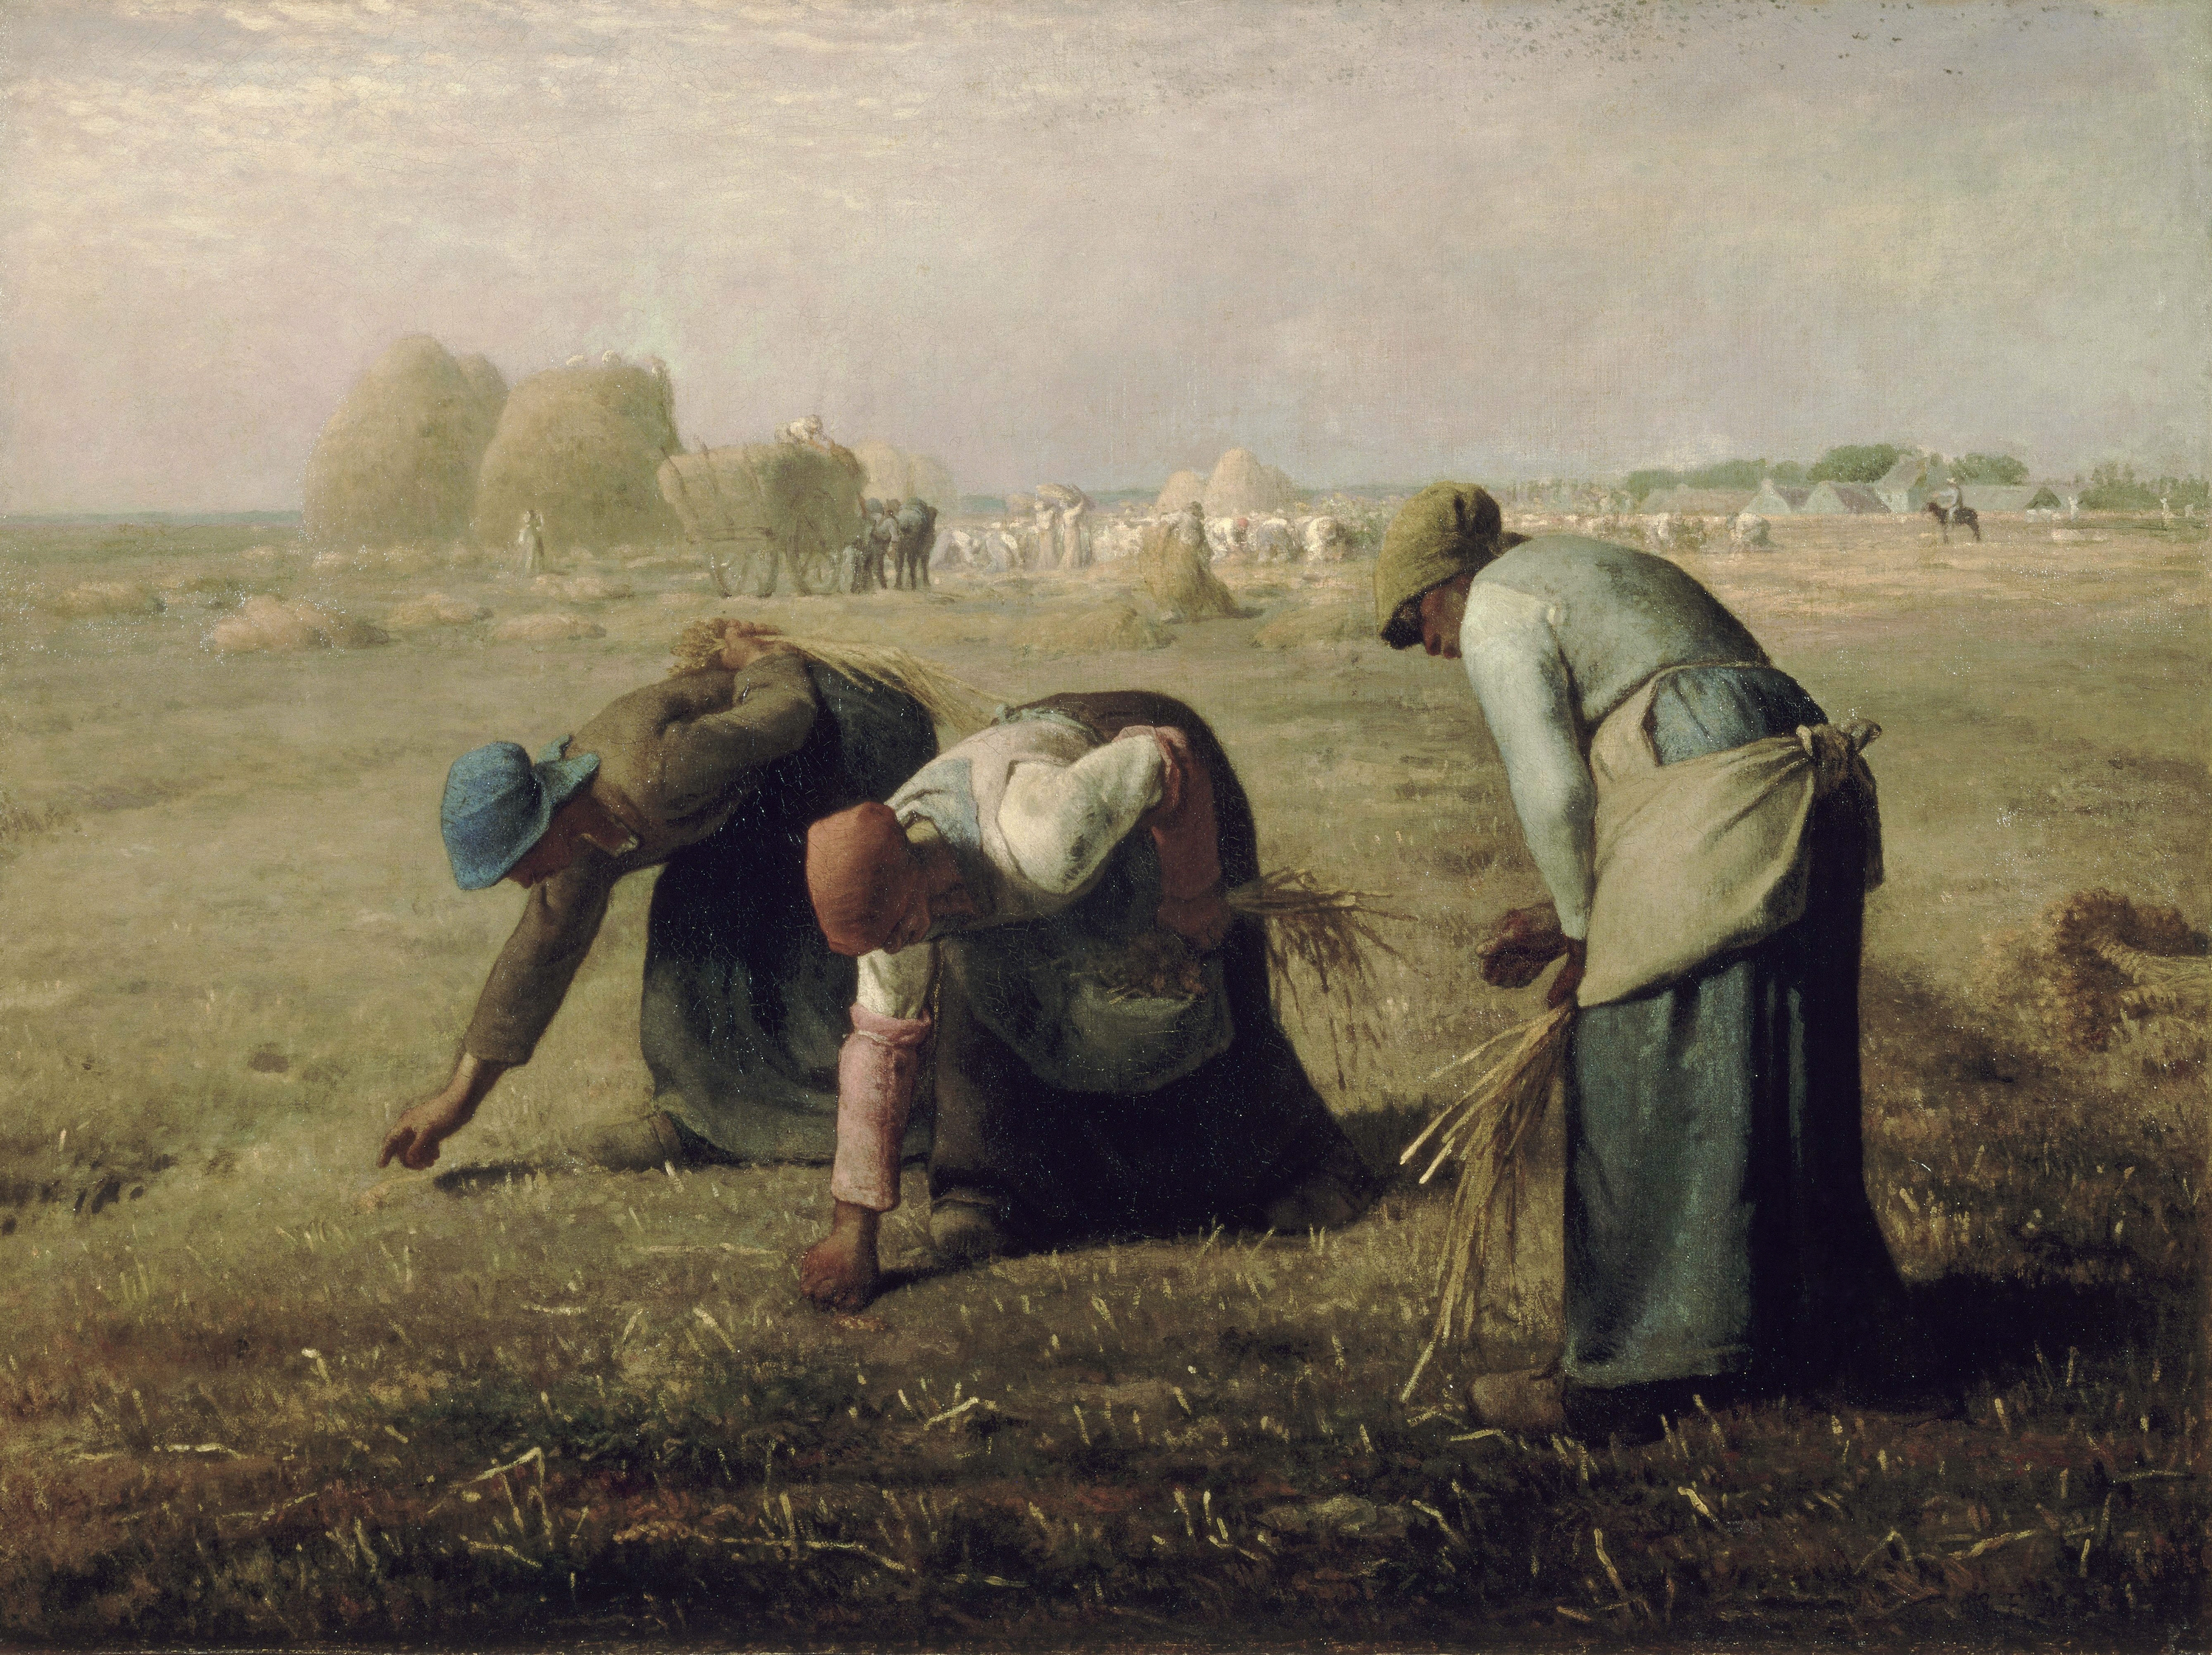 द ग्लेनेर्स  by Jean-François Millet - 1857 - 83.8 × 111.8 cm 